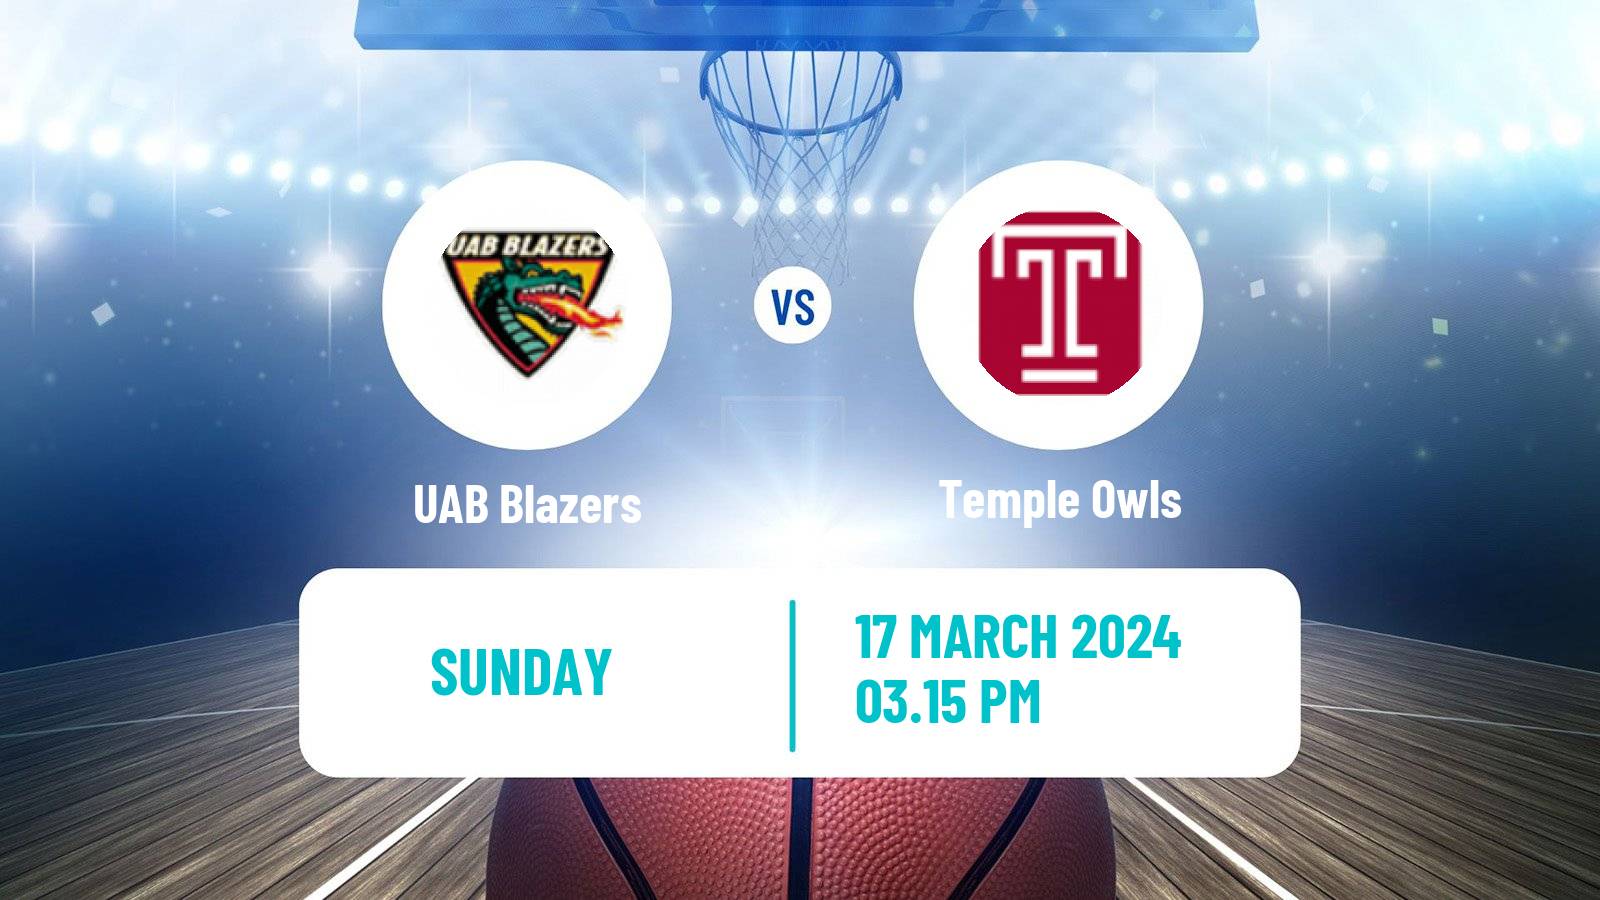 Basketball NCAA College Basketball UAB Blazers - Temple Owls